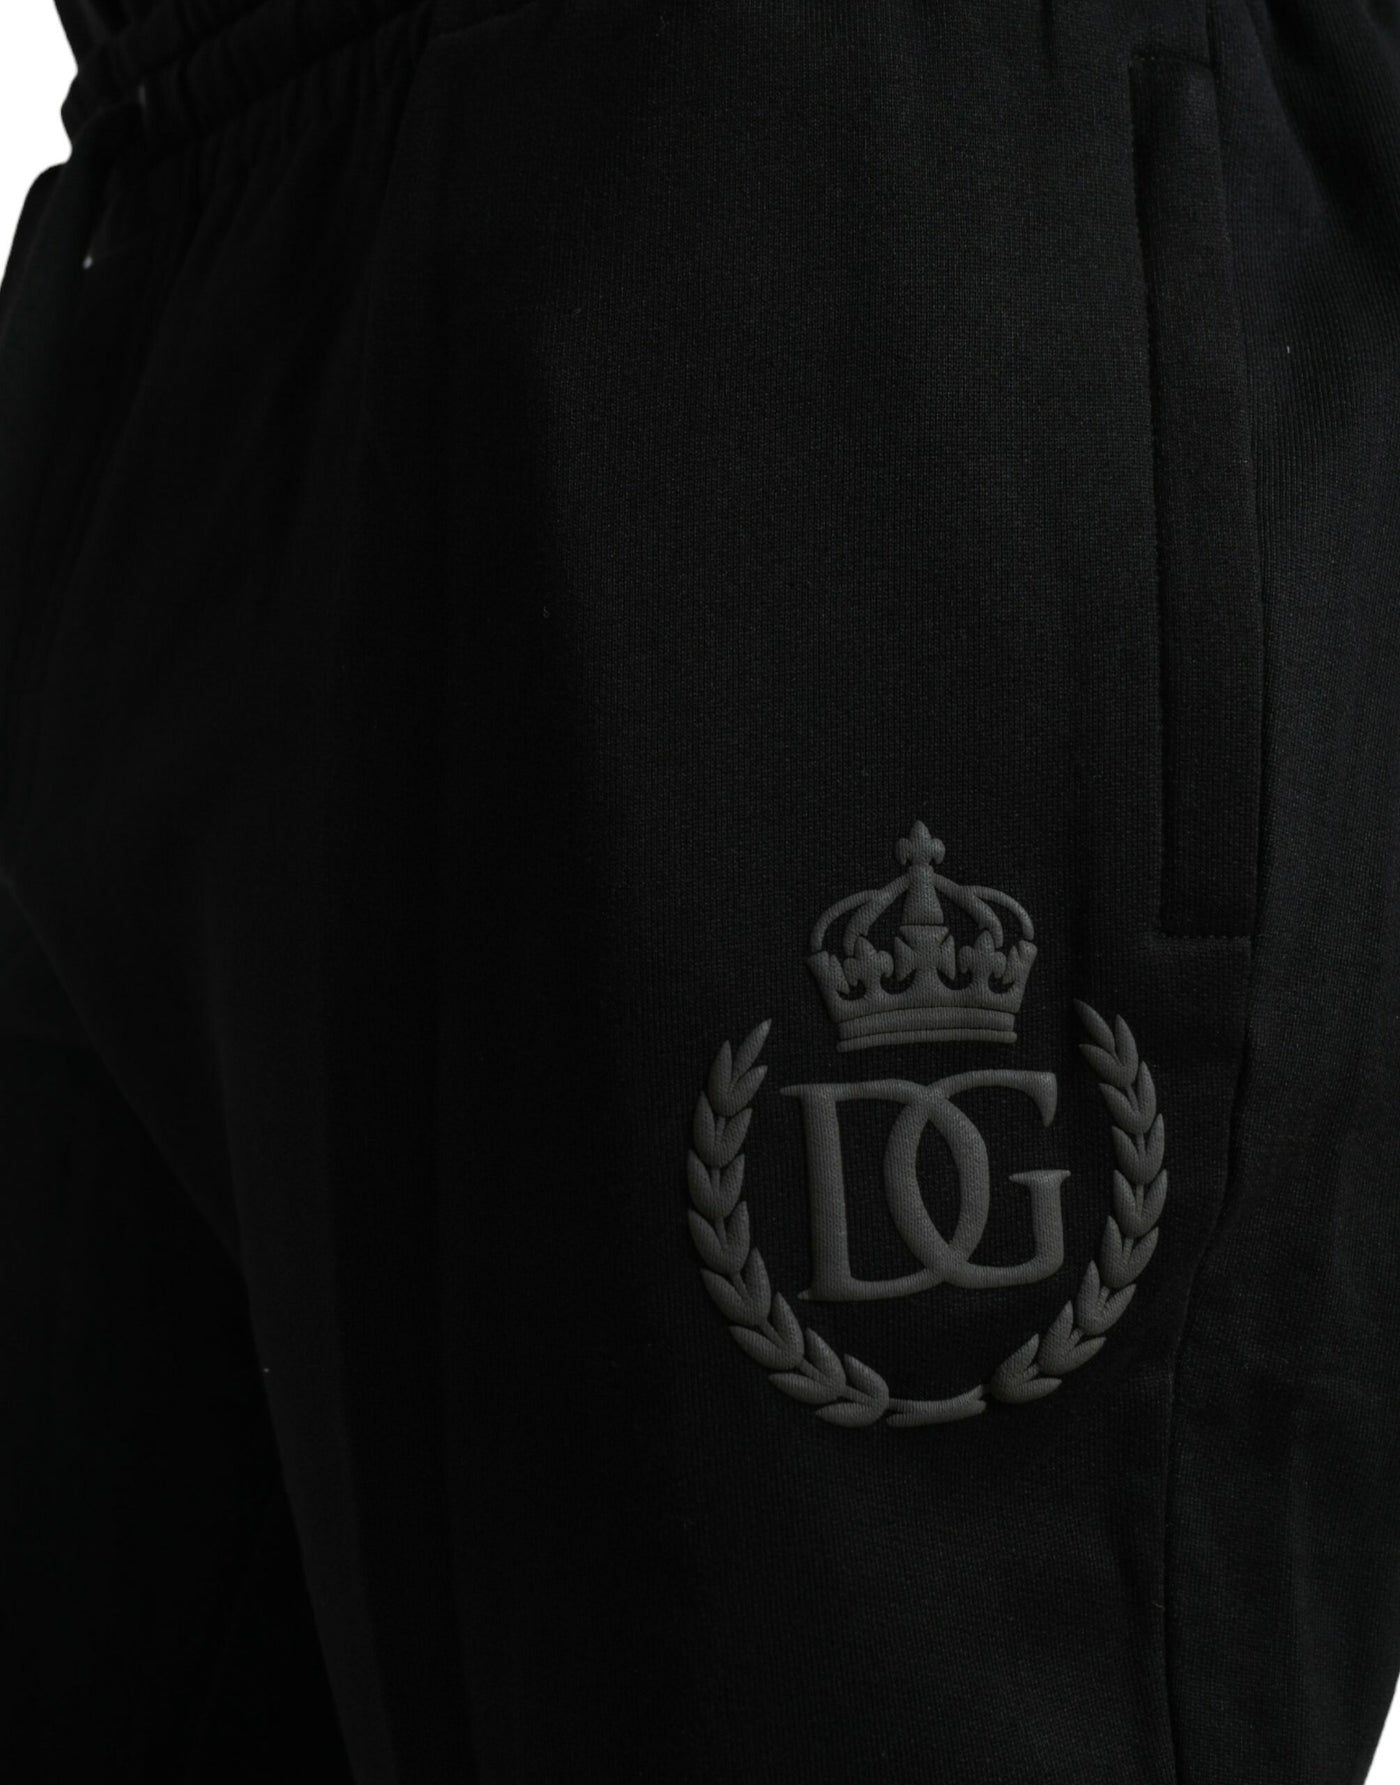 Dolce & Gabbana Black Cotton Logo Jogger Men Sweatpants Pants